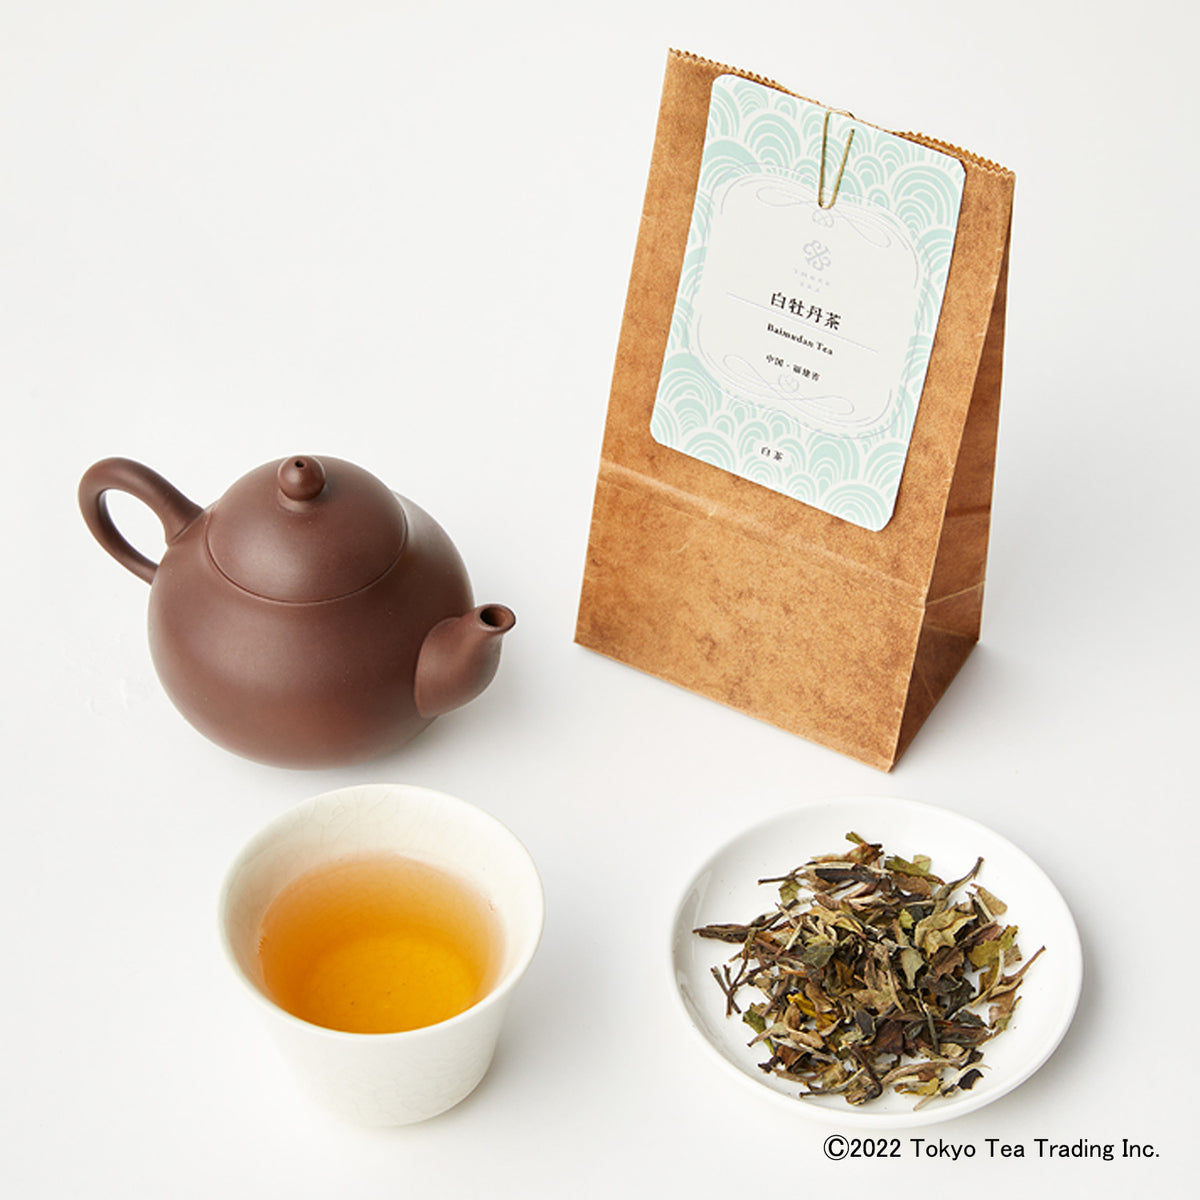 白牡丹茶15g(中国・福建省産)-まっすぐな茶葉の旨みと甘みの余韻